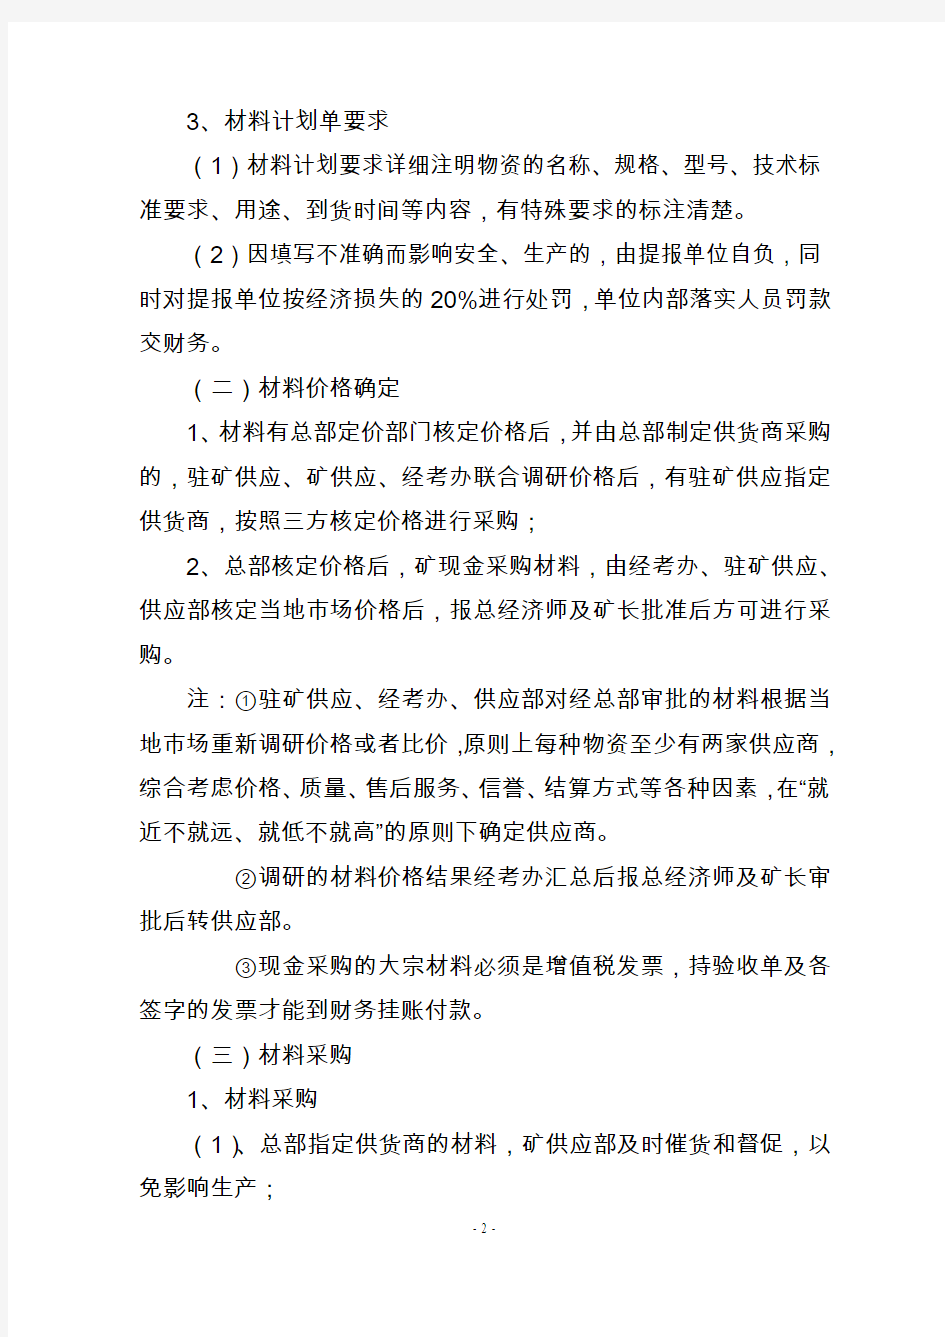 2013年振兴煤矿材料管理规定(定稿)